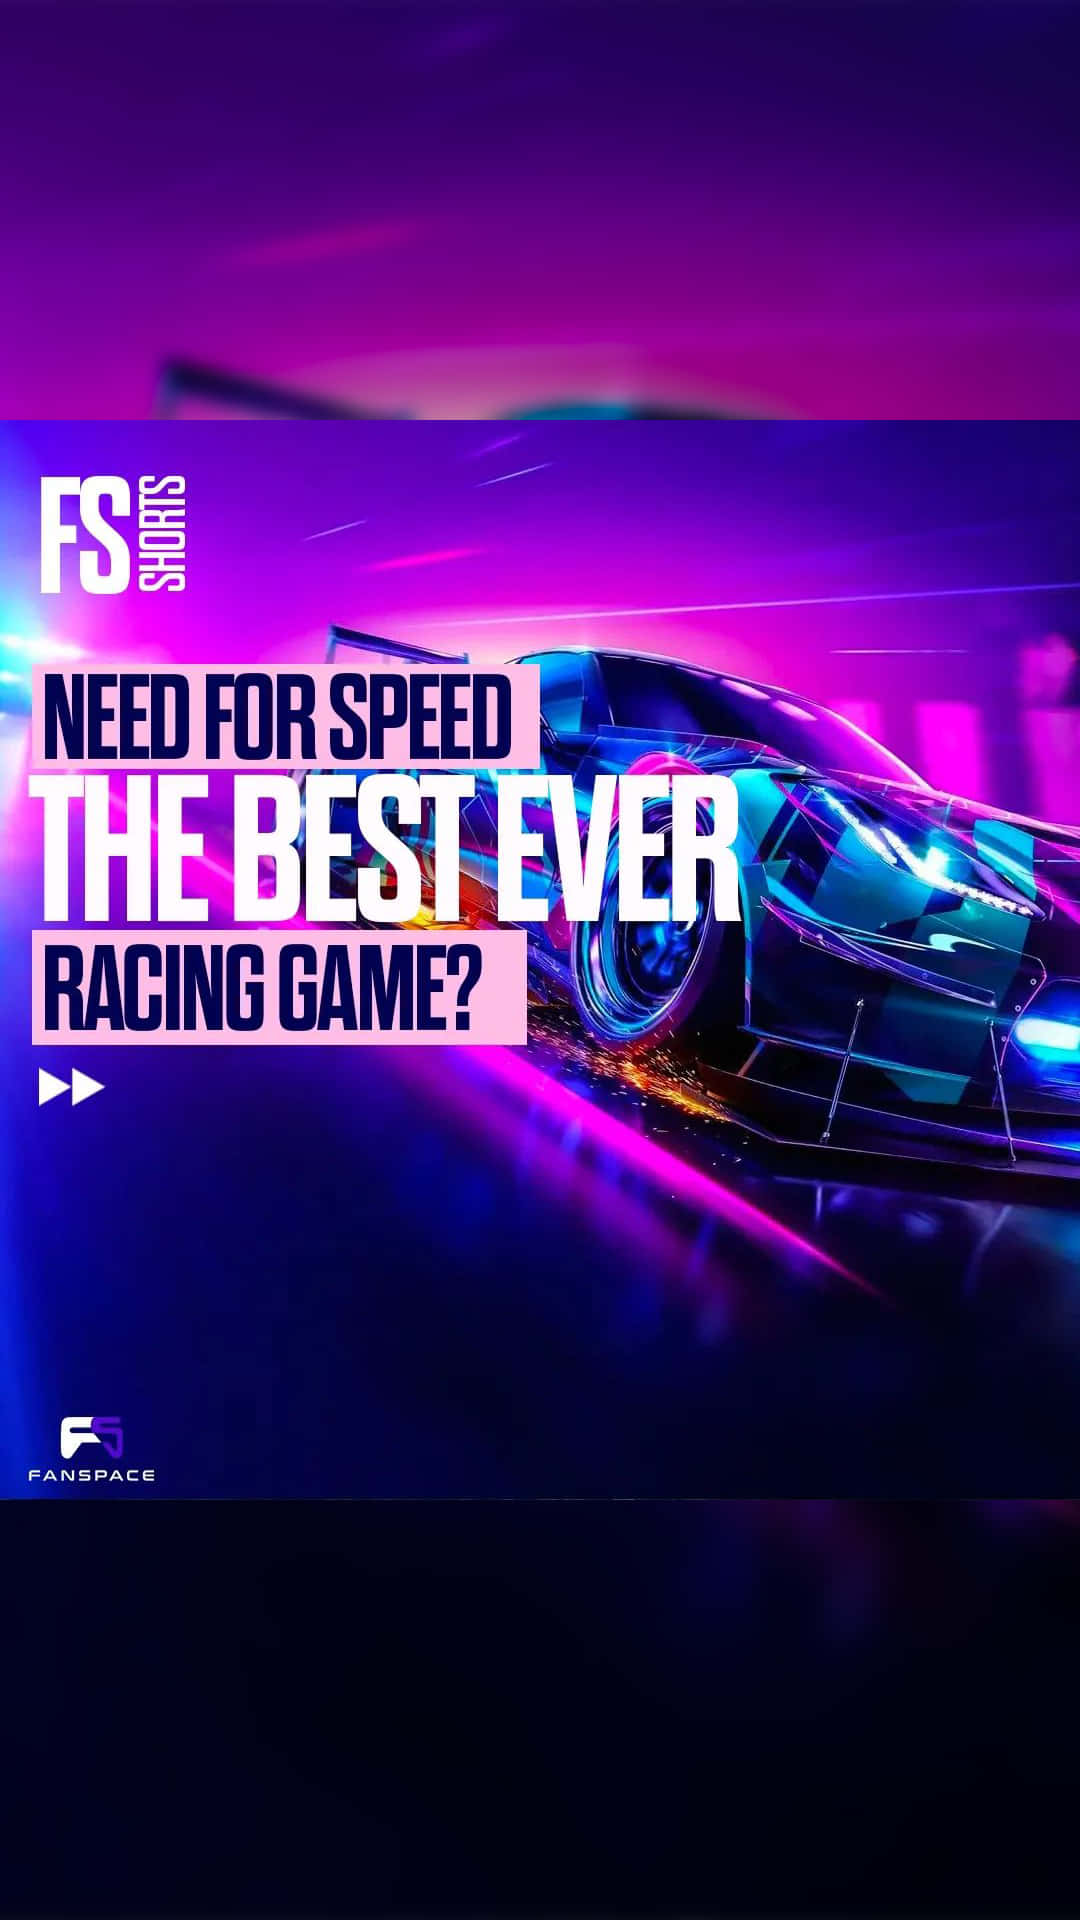 Istneed For Speed Das Beste Rennspiel Aller Zeiten?